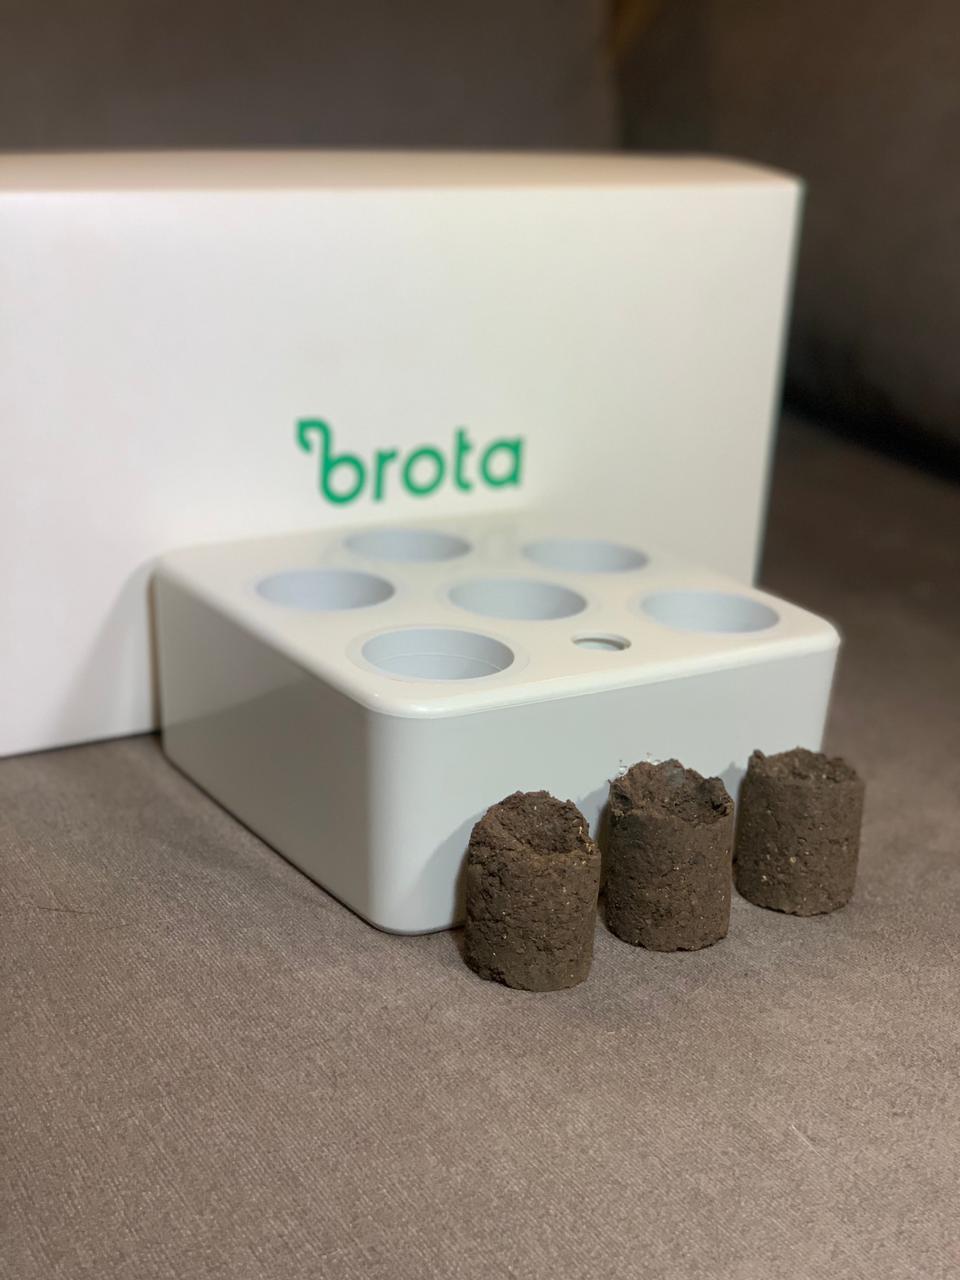 Brota, startup que criou horta inteligente e autônoma